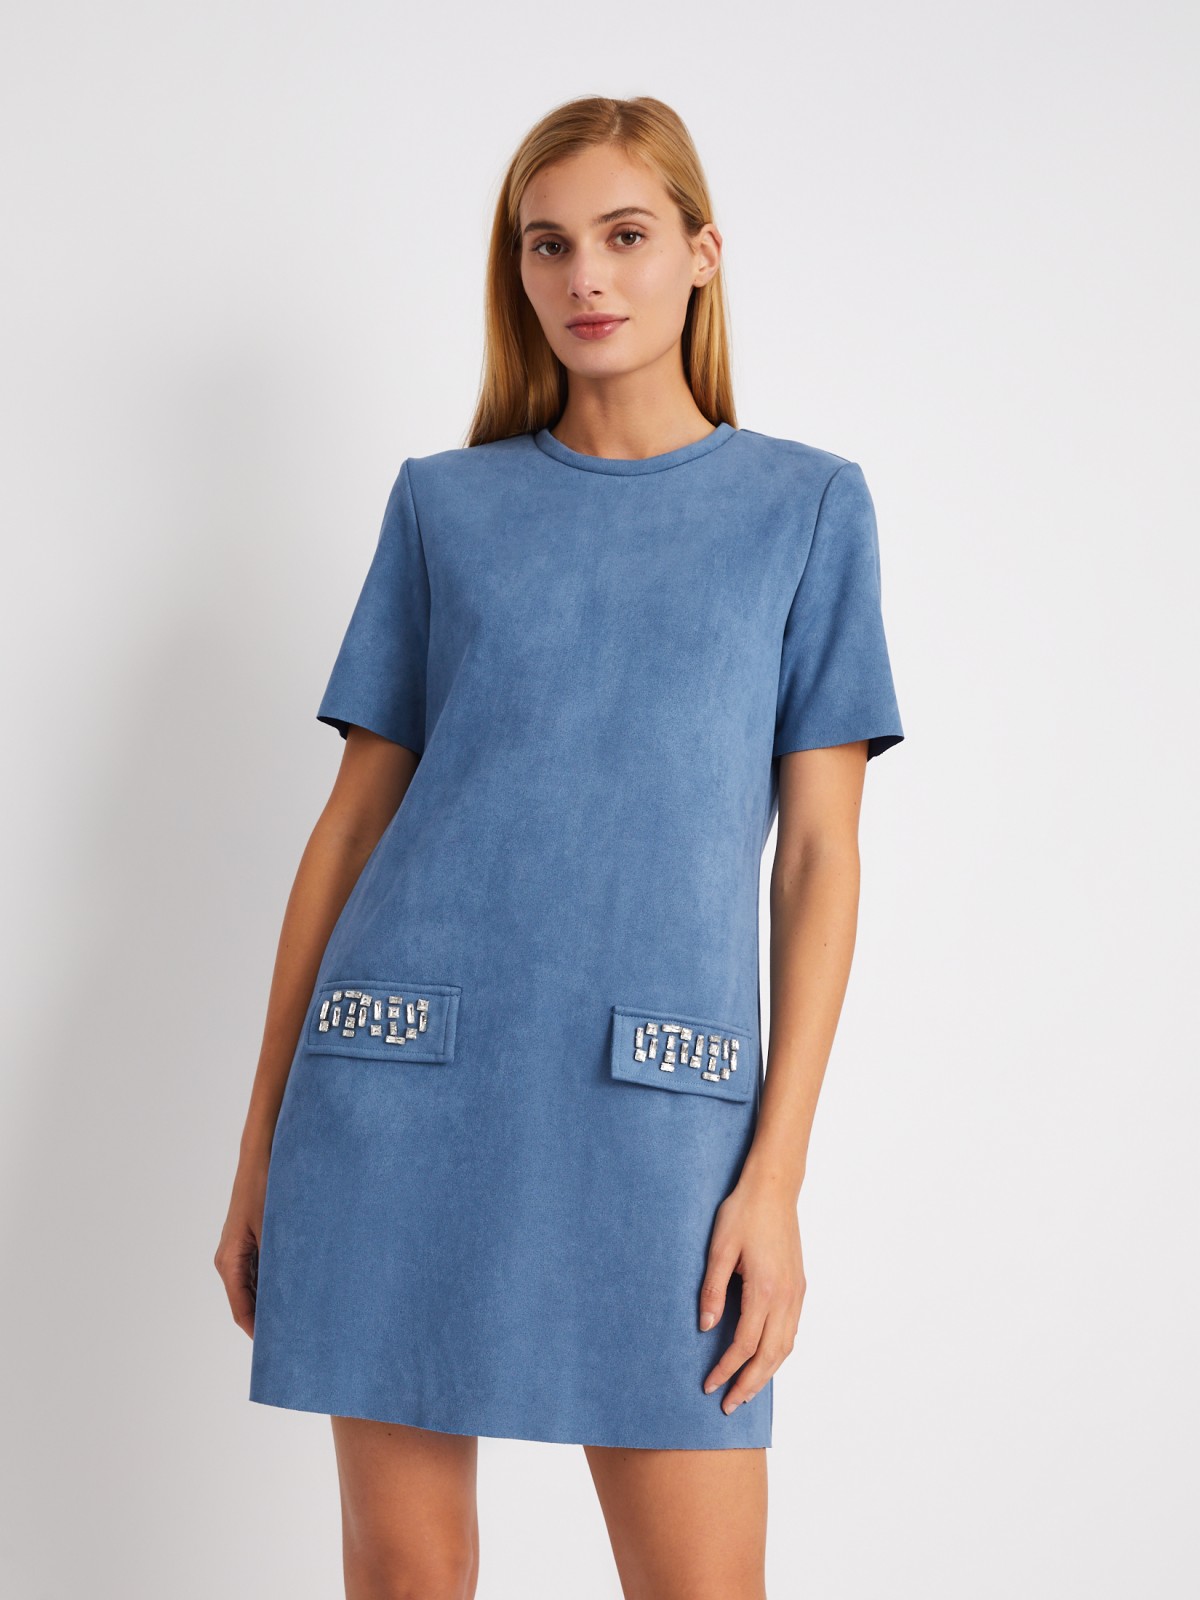 Платье-футболка из экозамши со стразами zolla 024118262361, цвет голубой, размер XS